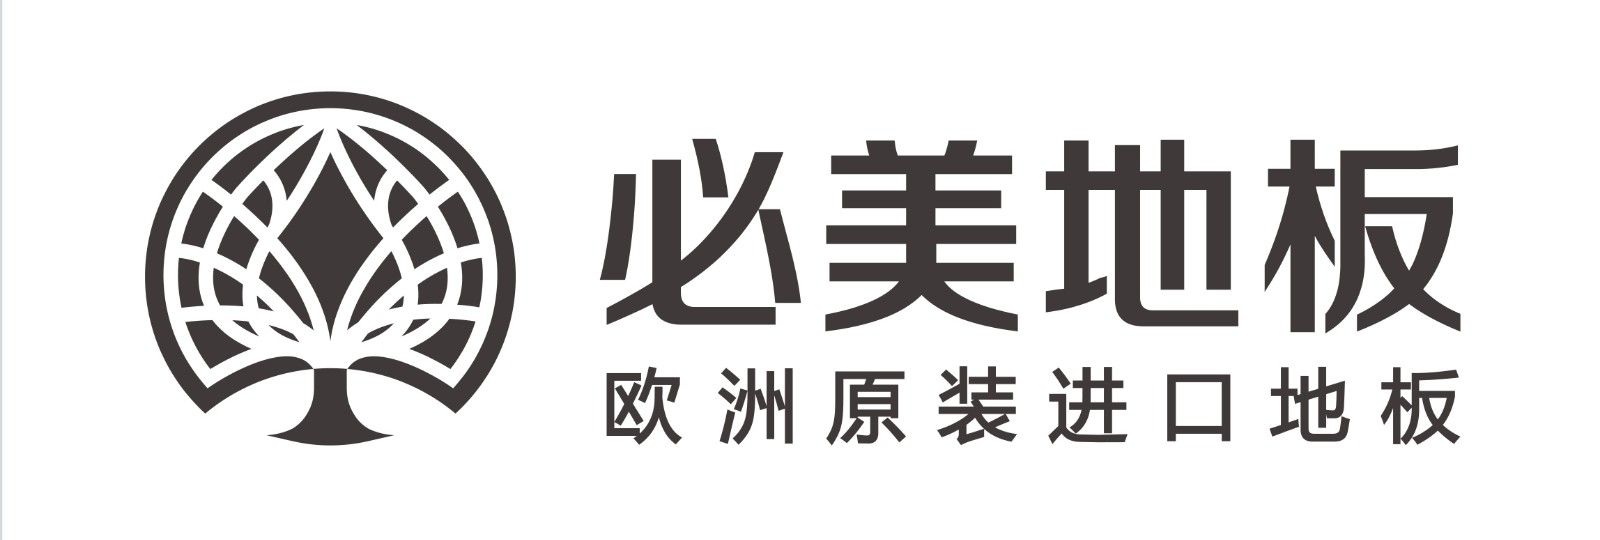 2020新版必美logo-1.jpg